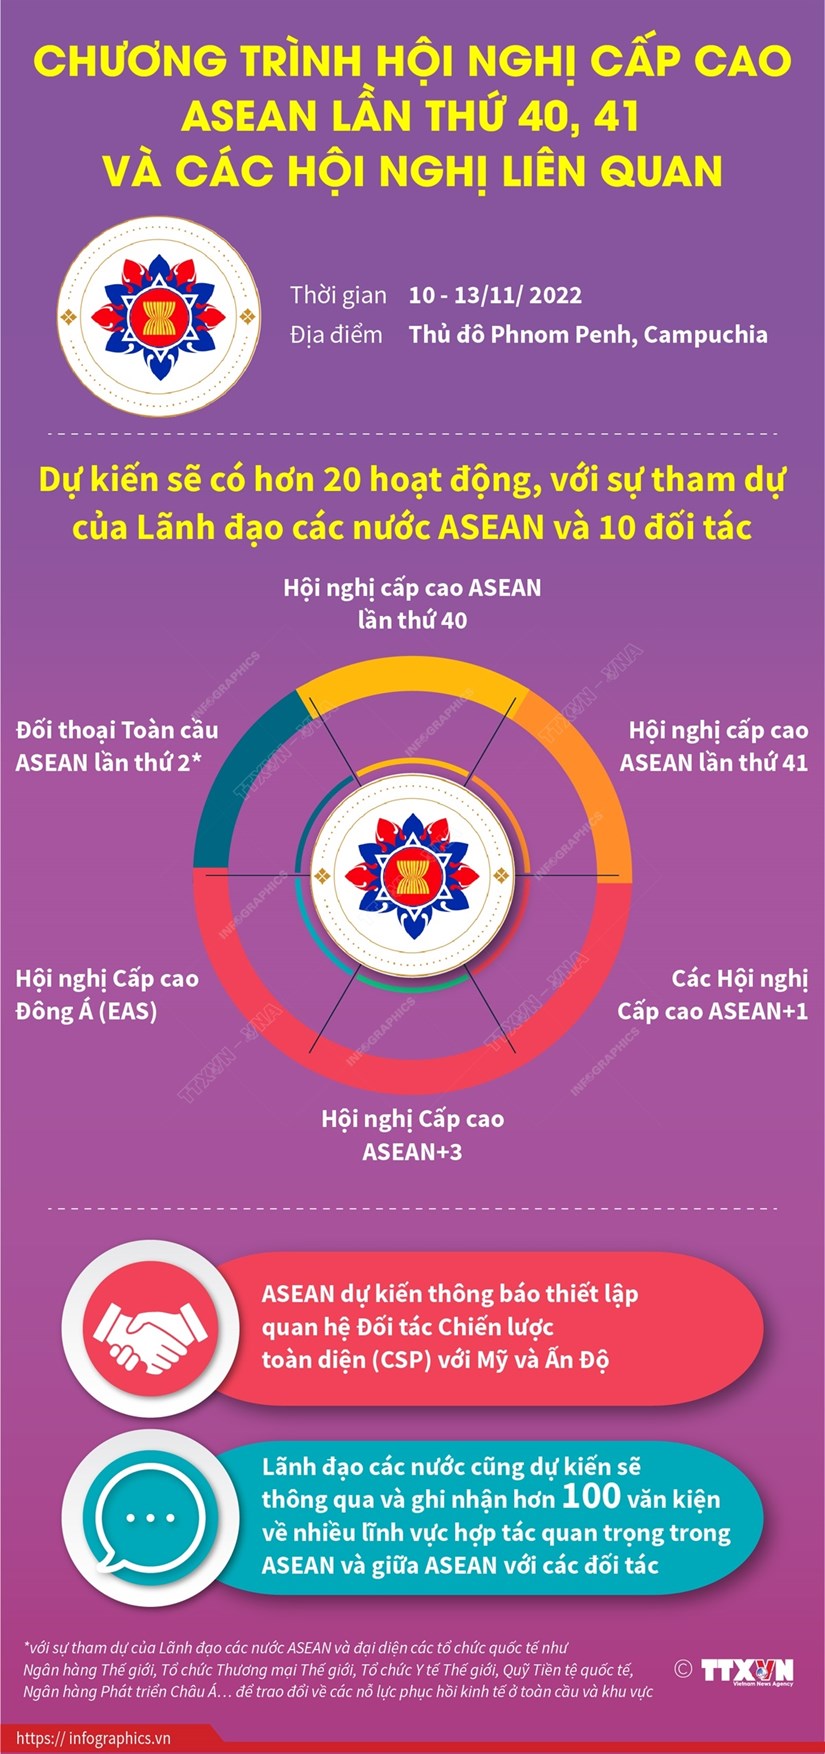 Hội nghị ASEAN: Hội nghị ASEAN là một sự kiện quan trọng của khu vực Đông Nam Á, nơi các nhà lãnh đạo của các quốc gia ASEAN tụ họp để thảo luận về các vấn đề chung. Những đối thoại và đàm phán tại hội nghị sẽ xác định hướng đi phát triển cho khu vực này. Hãy xem hình ảnh về Hội nghị ASEAN để hiểu rõ hơn về sự kiện quan trọng này.